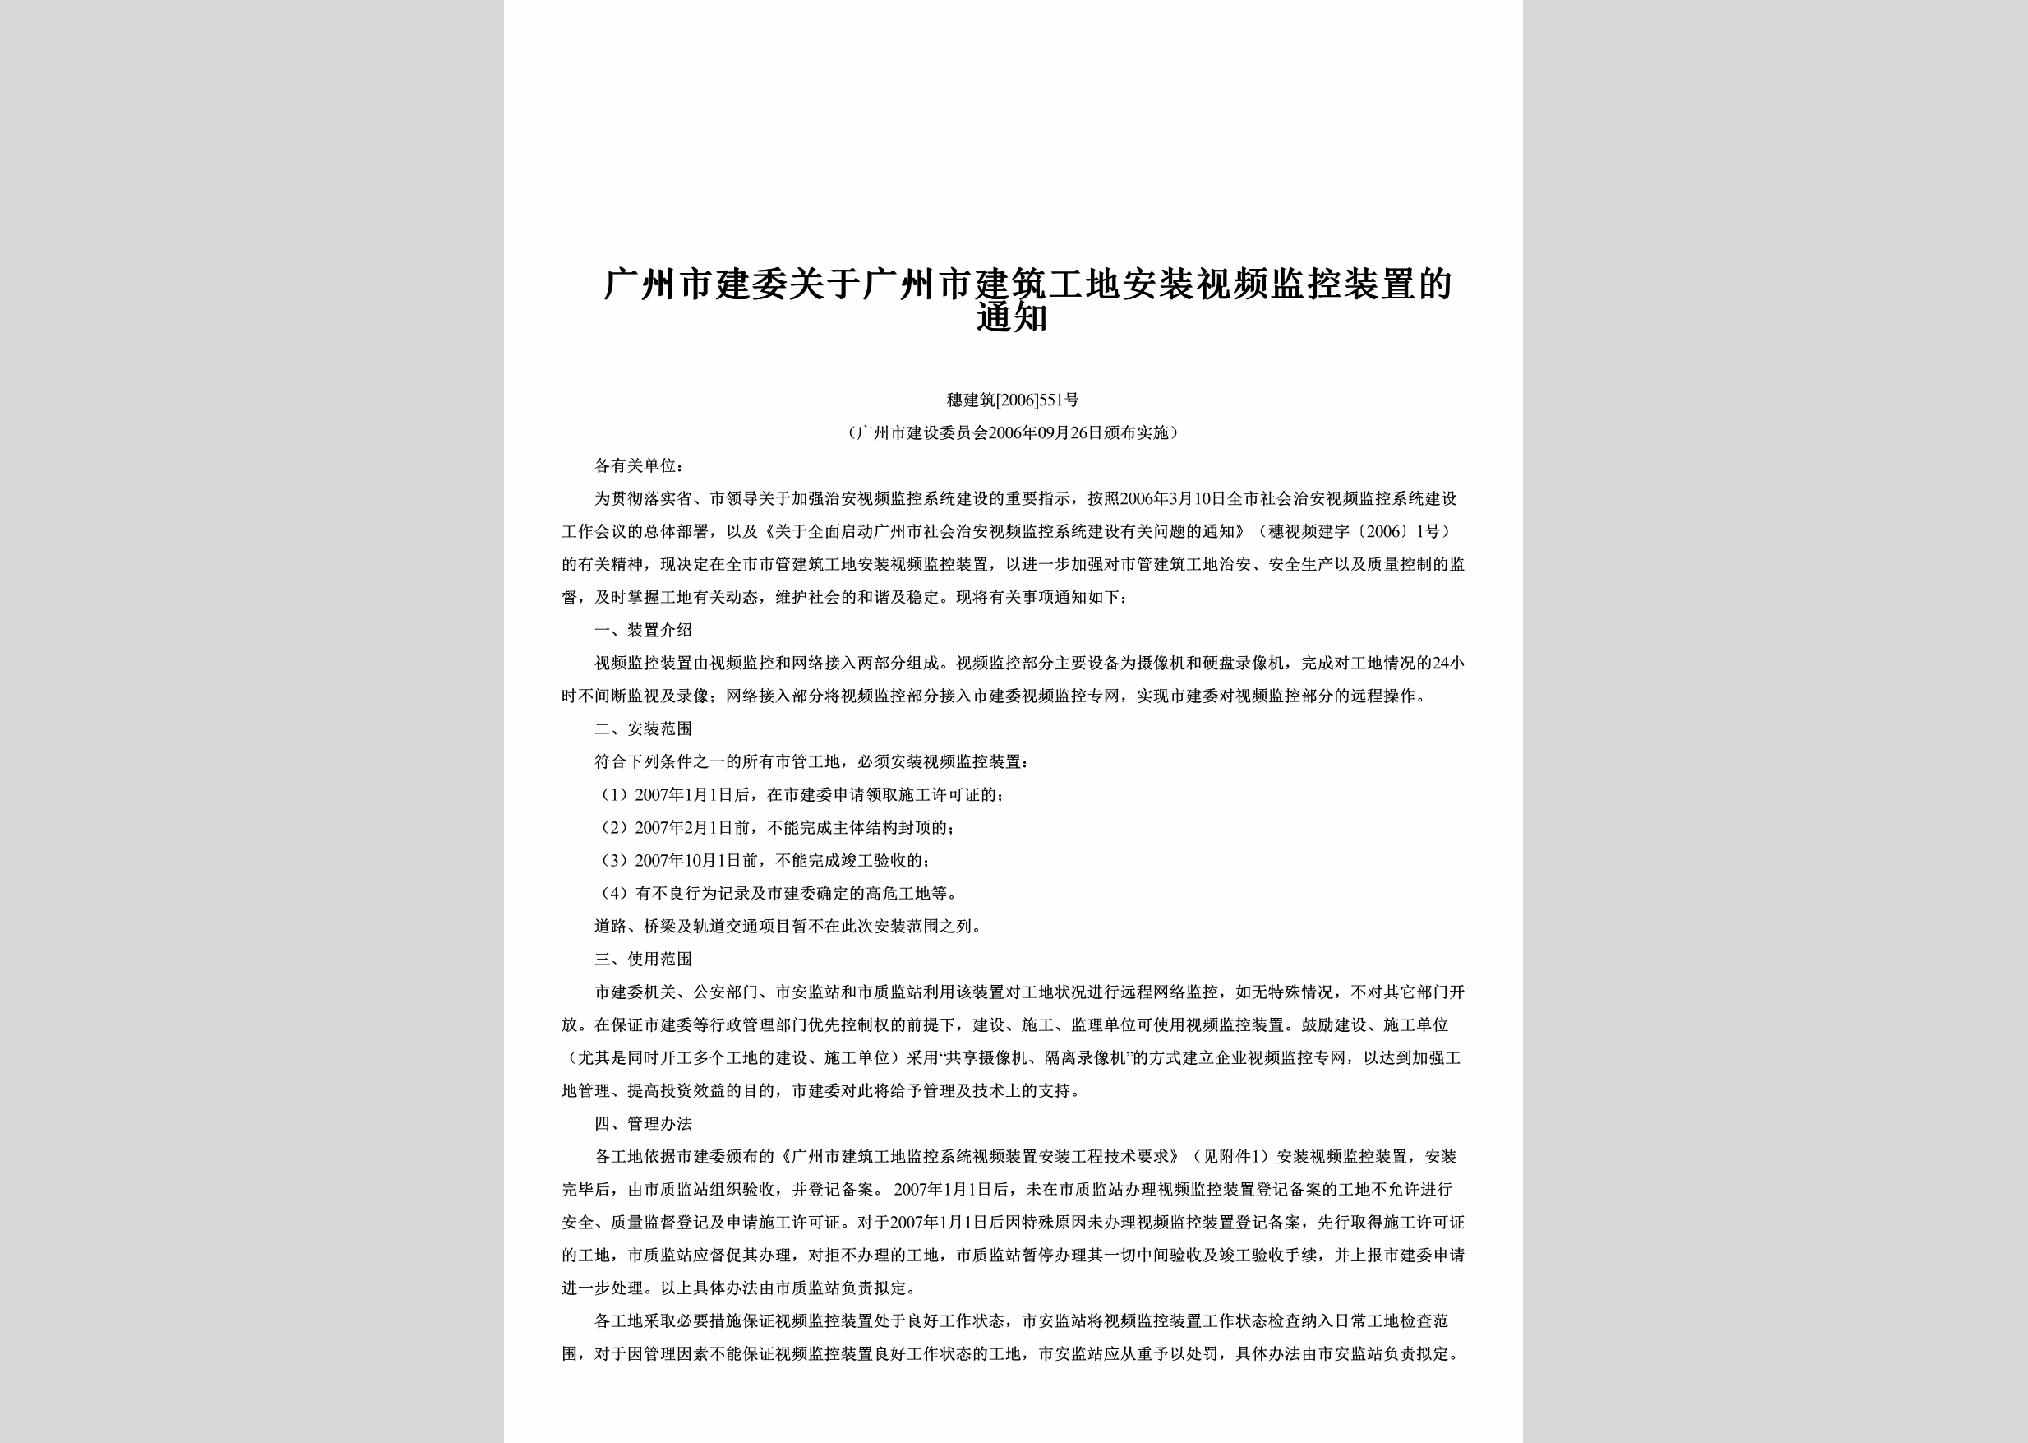 穗建筑[2006]551号：关于广州市建筑工地安装视频监控装置的通知